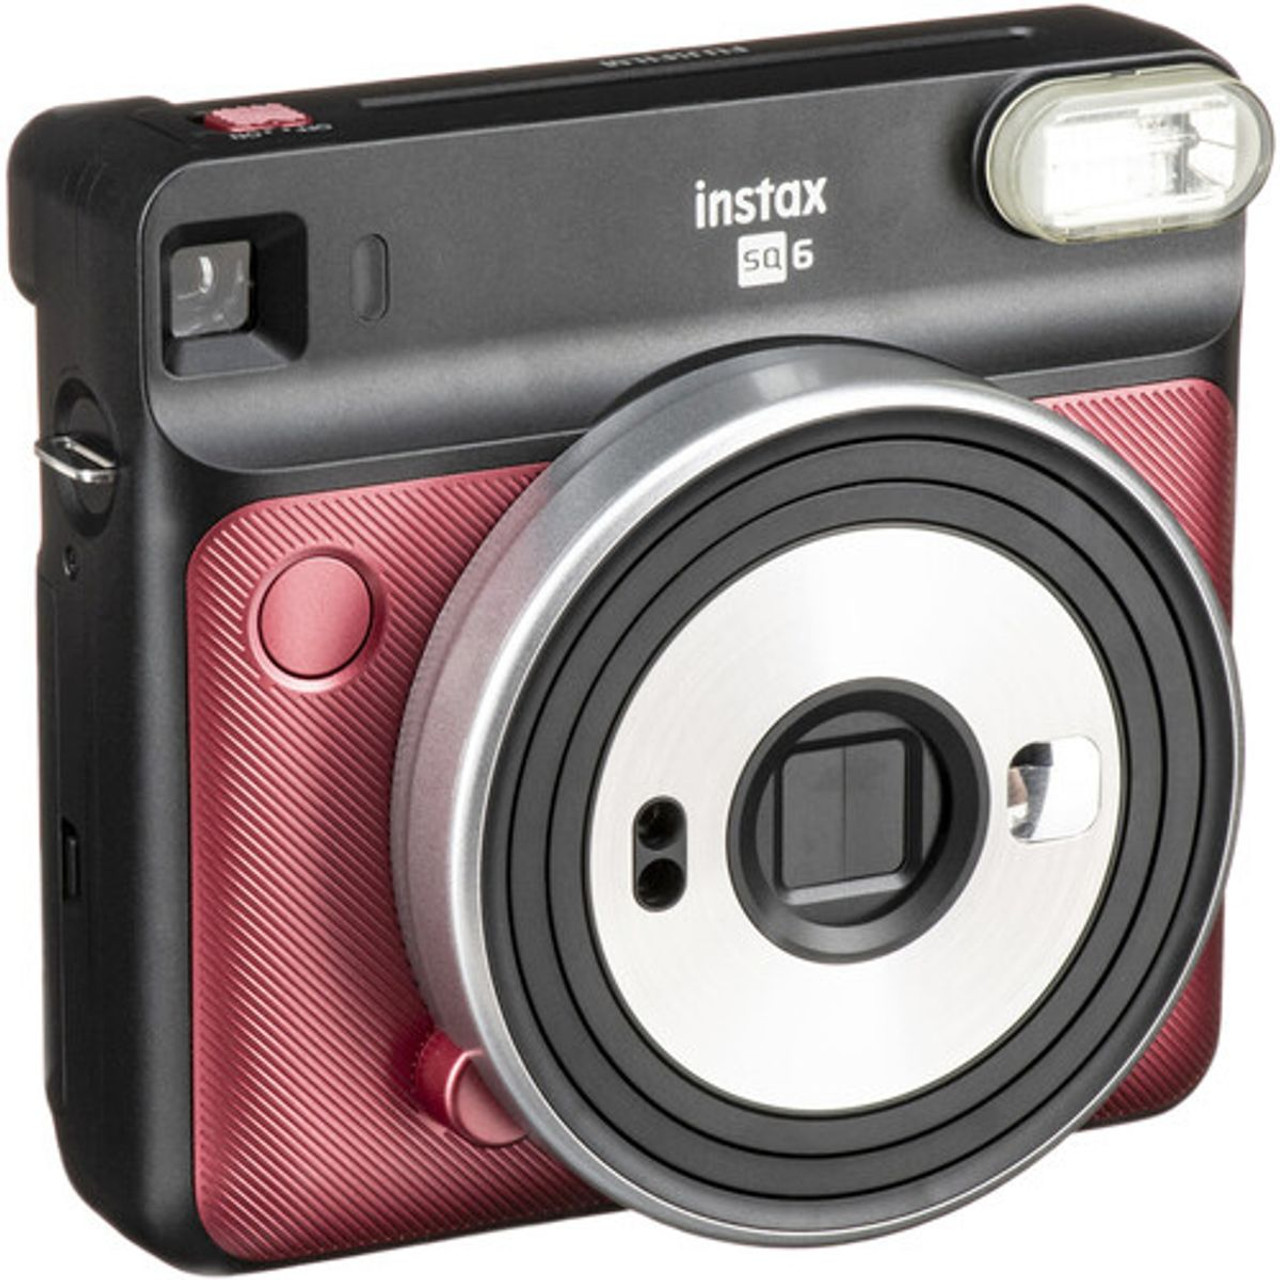 Fujifilm Instax Square SQ6 Instant Film Camera product image